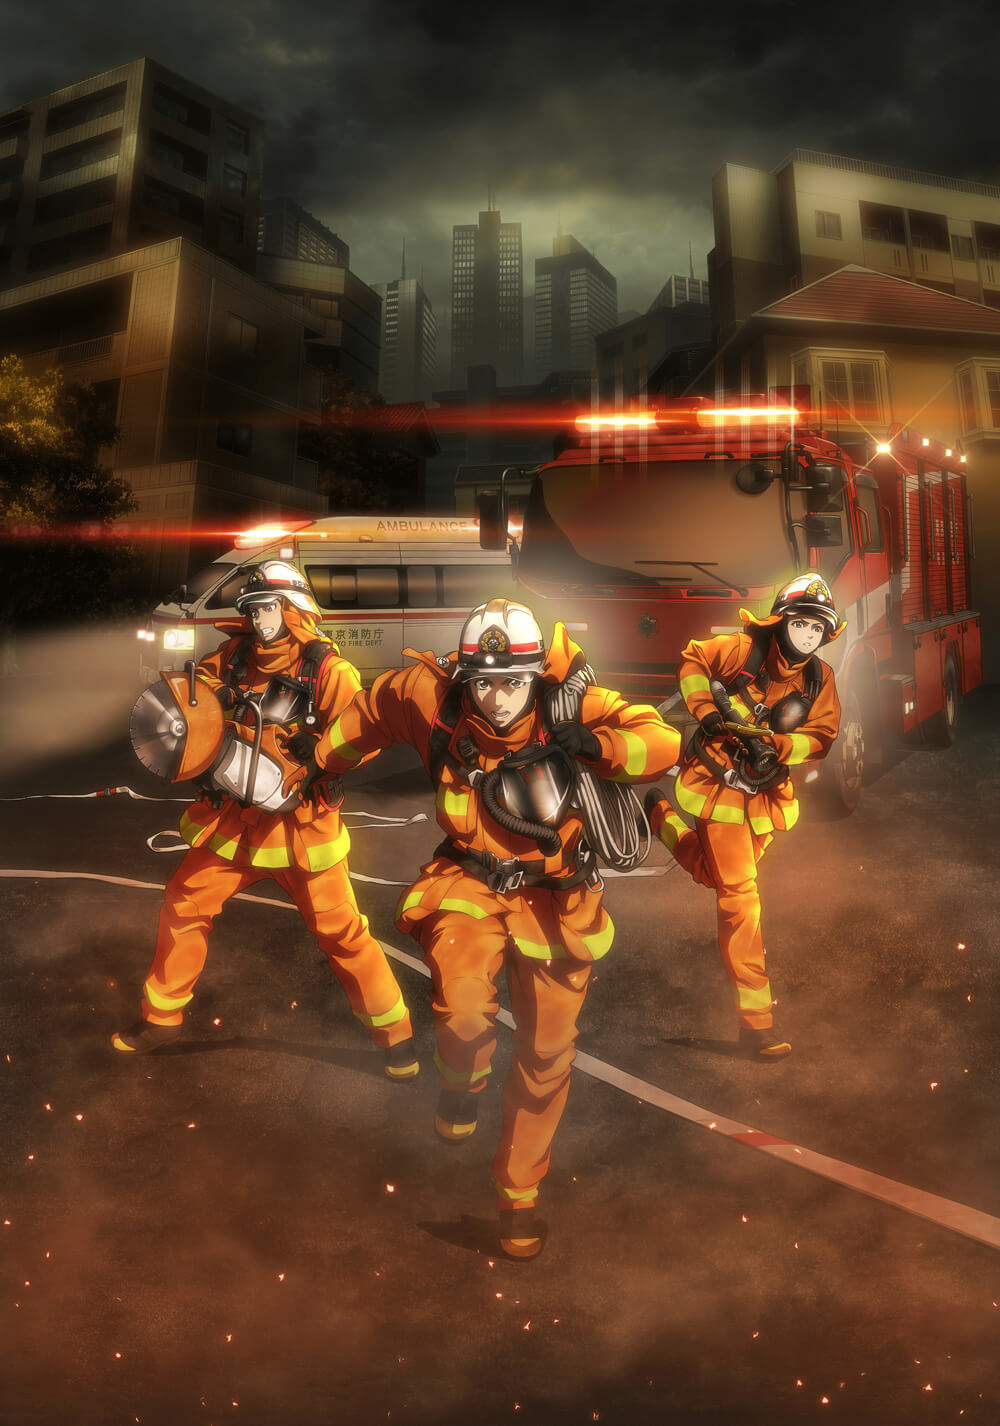 آتش نشان دایگو: نجات دهنده در نارنجی (Firefighter Daigo: Rescuer in Orange)